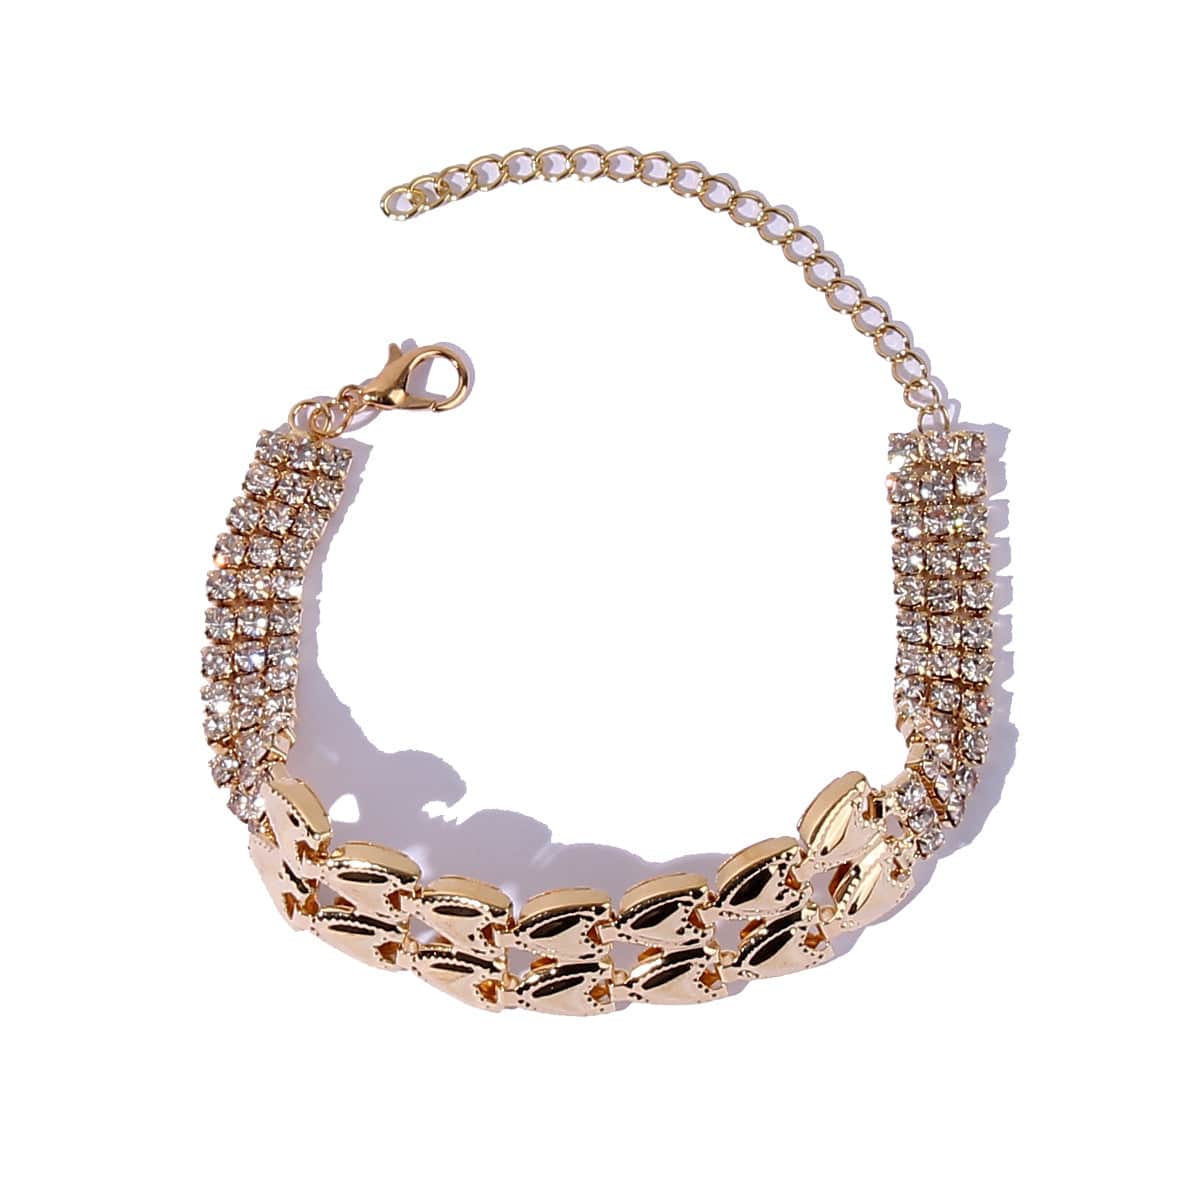 eszy2find bracelet Gold Fashion Nightclub Shiny Metal Claw Chain Bracelet